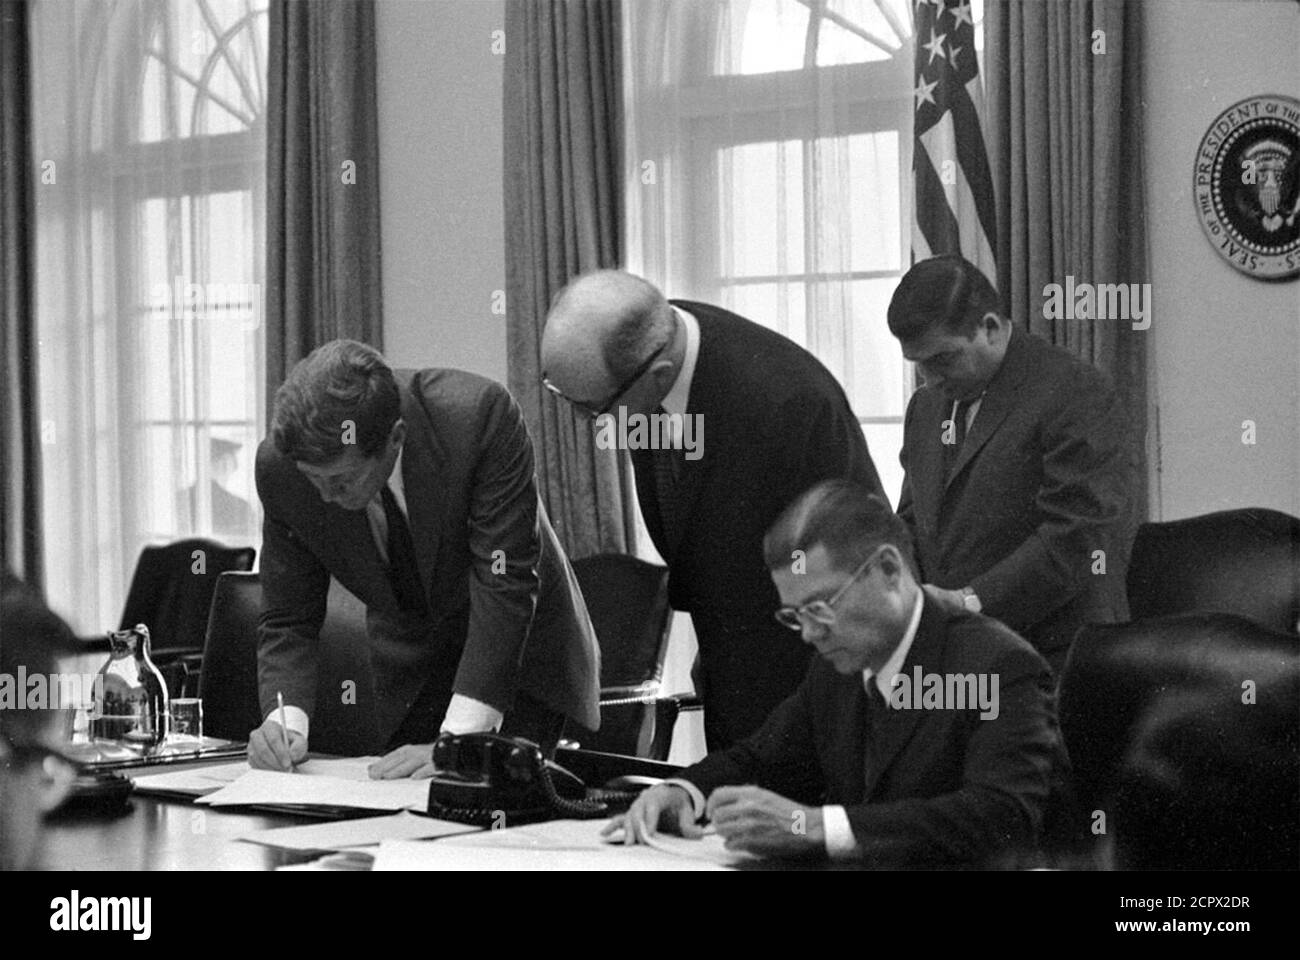 Crisi missilistica cubana. Il Presidente John F Kennedy, il Segretario di Stato Dean Rusk, il Segretario della Difesa Robert S. McNamara (seduto), e il Segretario della Casa Bianca Pierre Salinger nell'Ufficio del Gabinetto nell'ottobre 1962, ad una riunione dell'EXCOMM per discutere della crisi a Cuba. Foto Stock